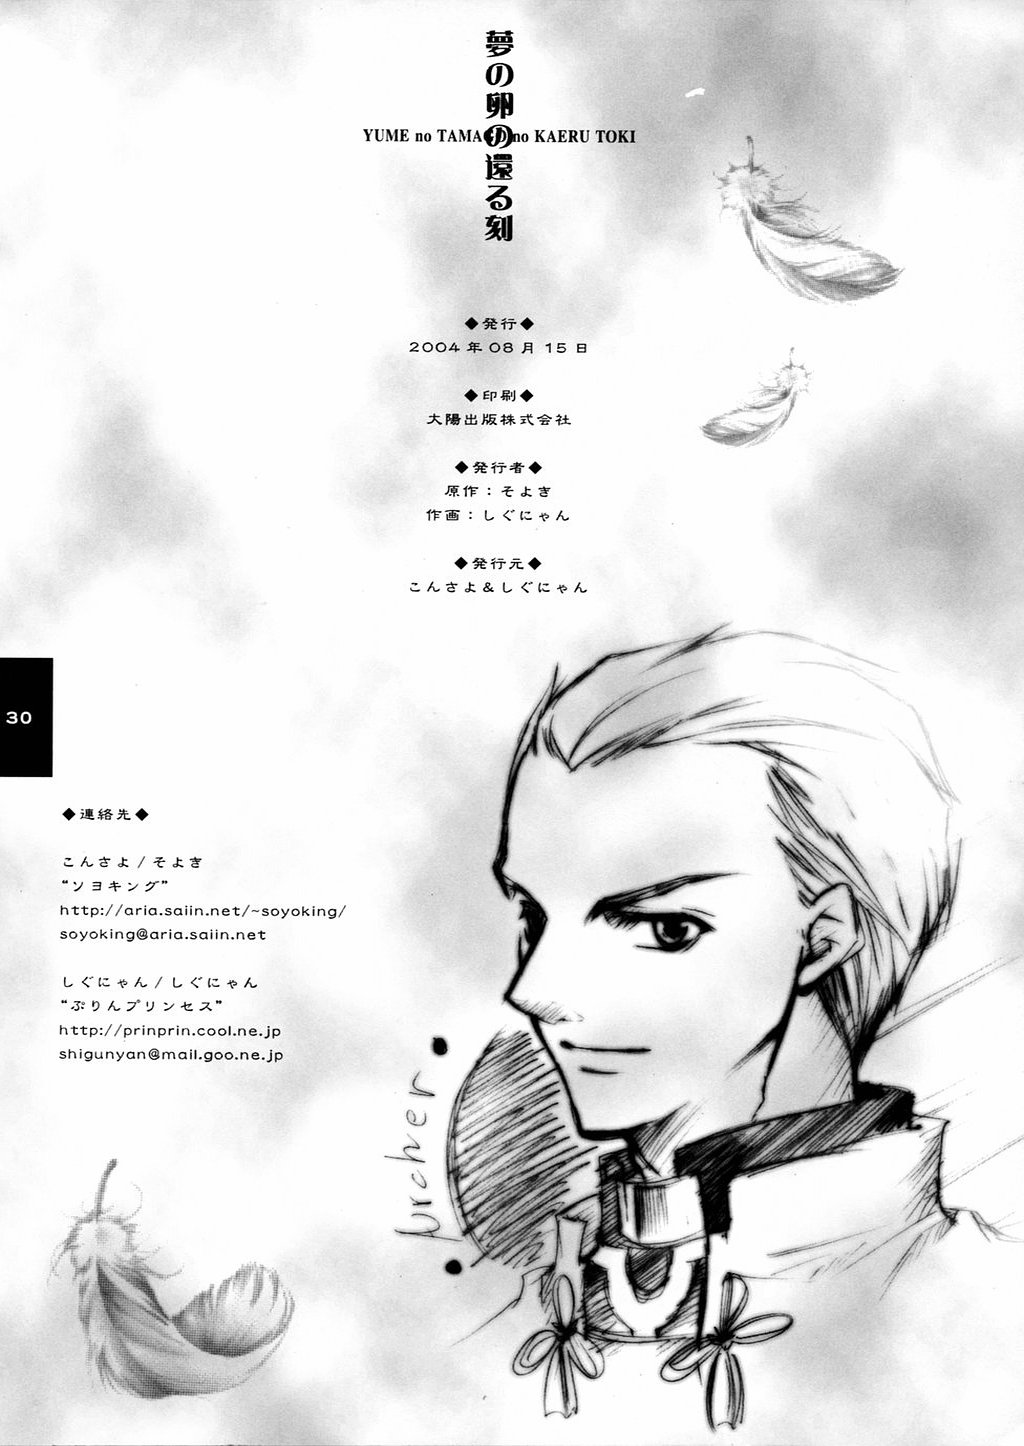 (C66) [Konsayo, Shigunyan (Soyoki, Shigunyan)] Yume no Tamago no Kaeru Toki (Fate/stay night) page 29 full